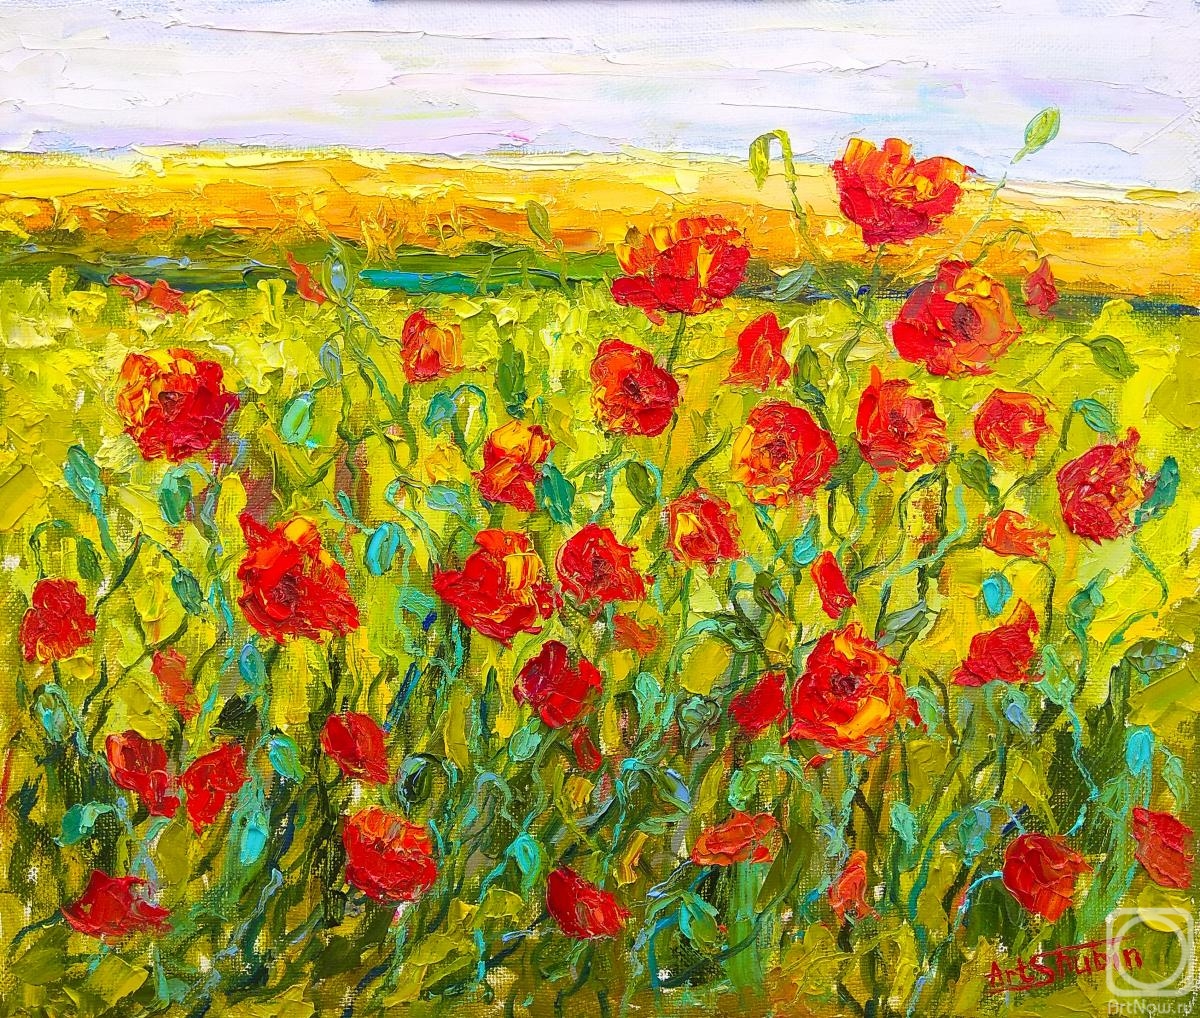 Shubin Artyom. Poppies near the rye field